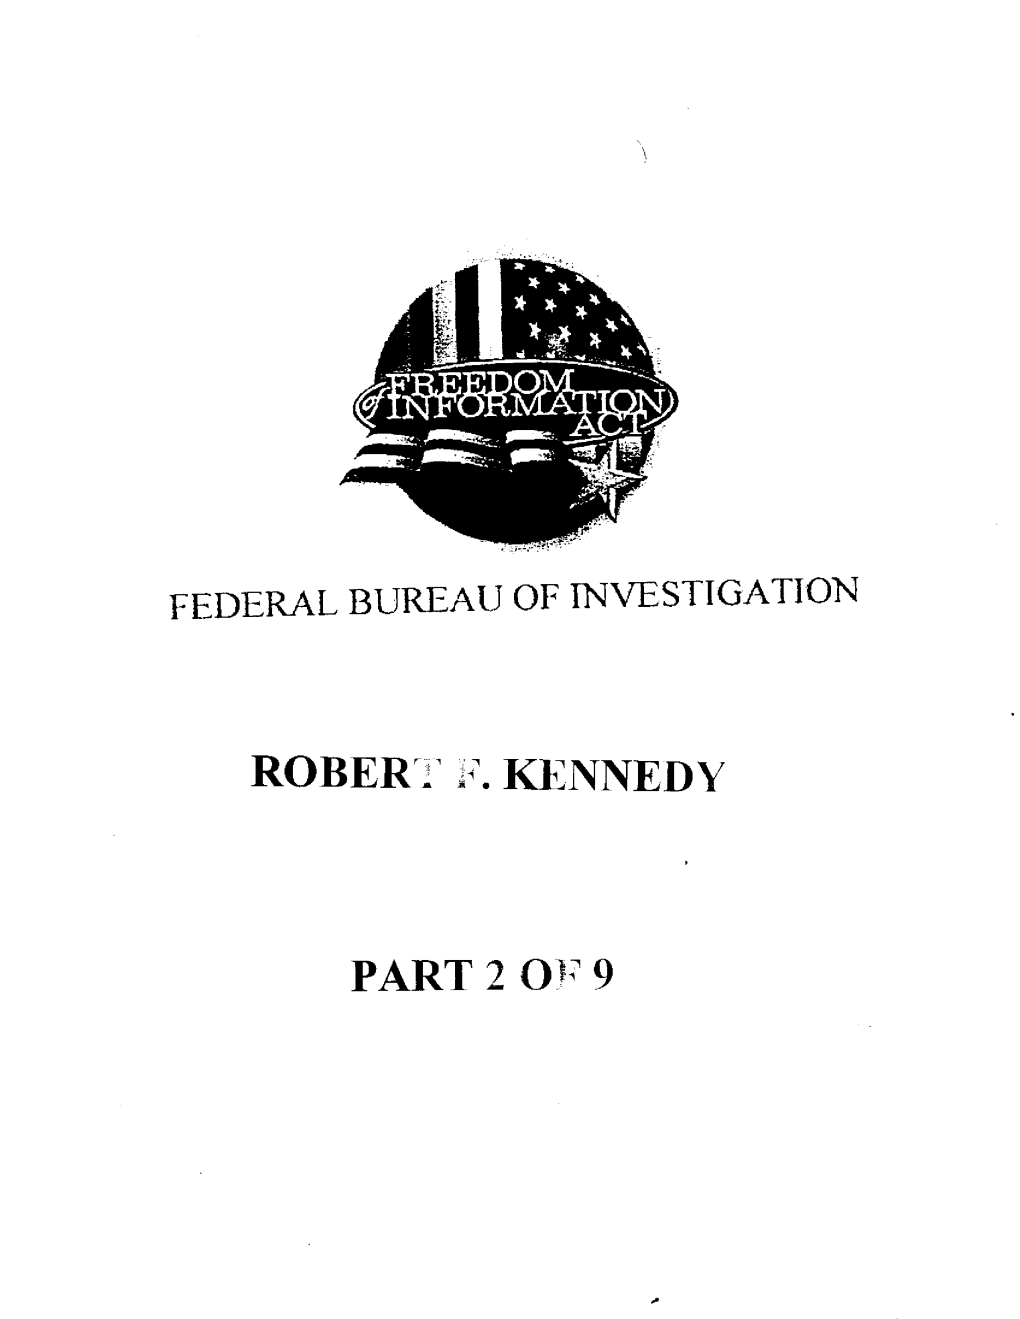 Robert F. Kennedy Part 3 of 14